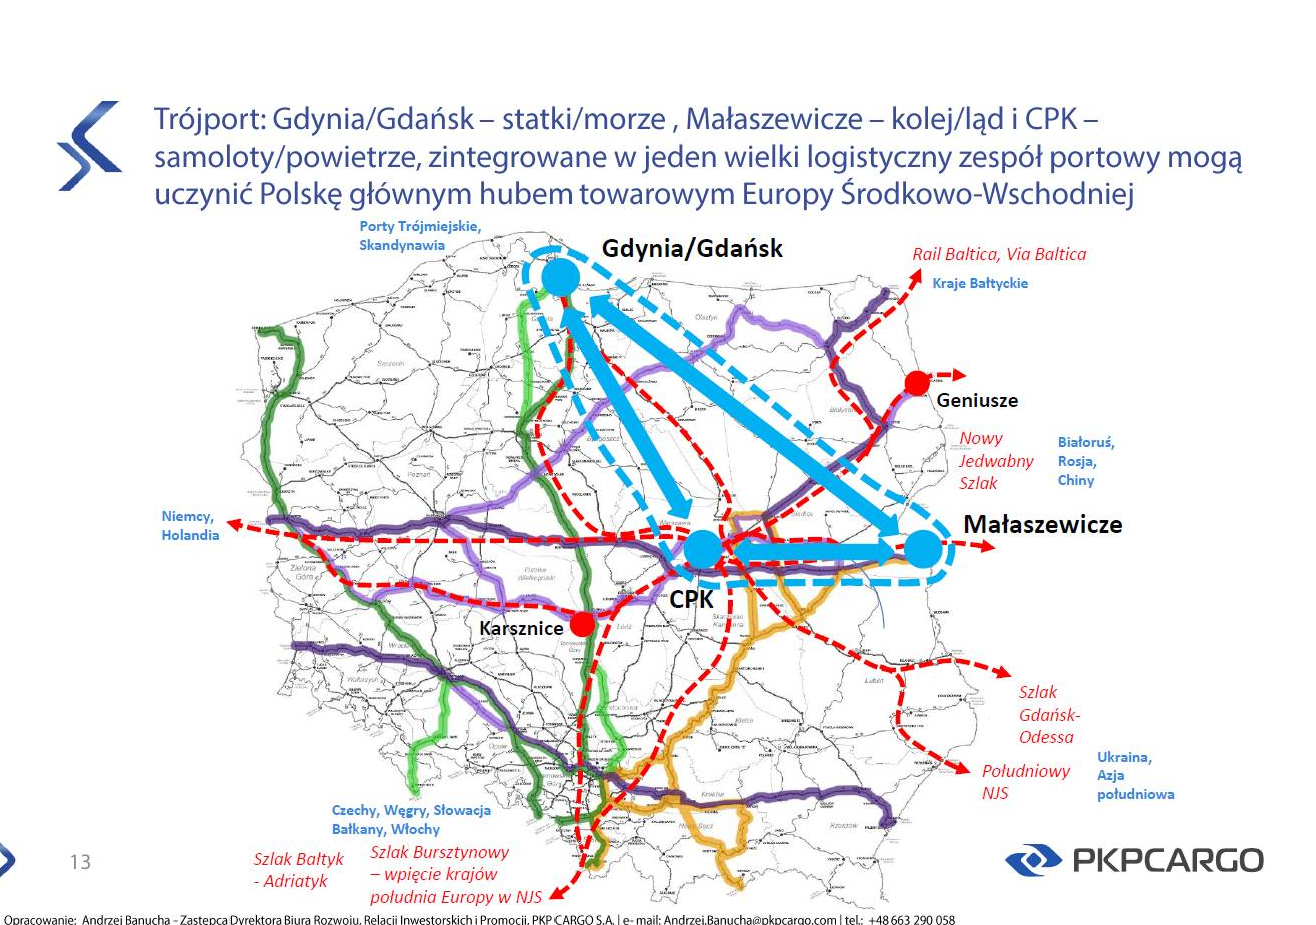 mapa prezentującą filary koncepcji trójportu